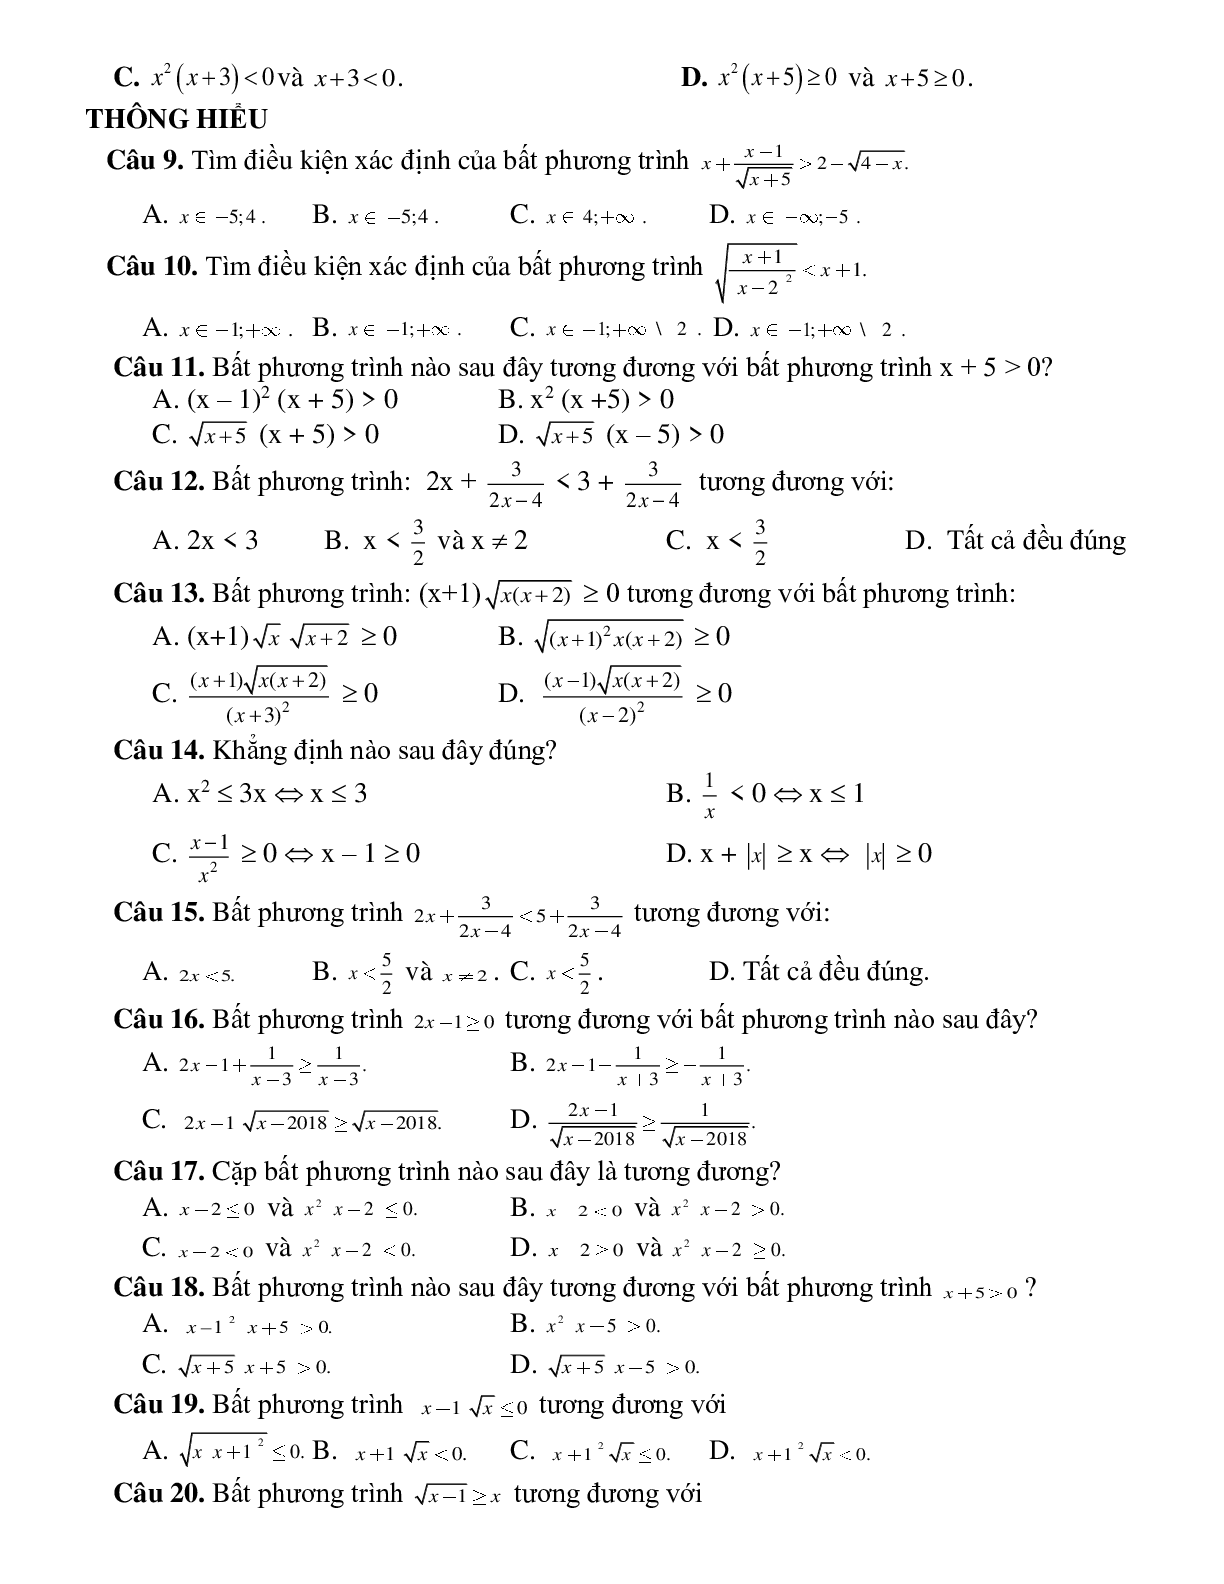 Bài tập điều kiện xác định của bất phương trình và cặp bất phương trình tương đương Toán 10 (trang 3)